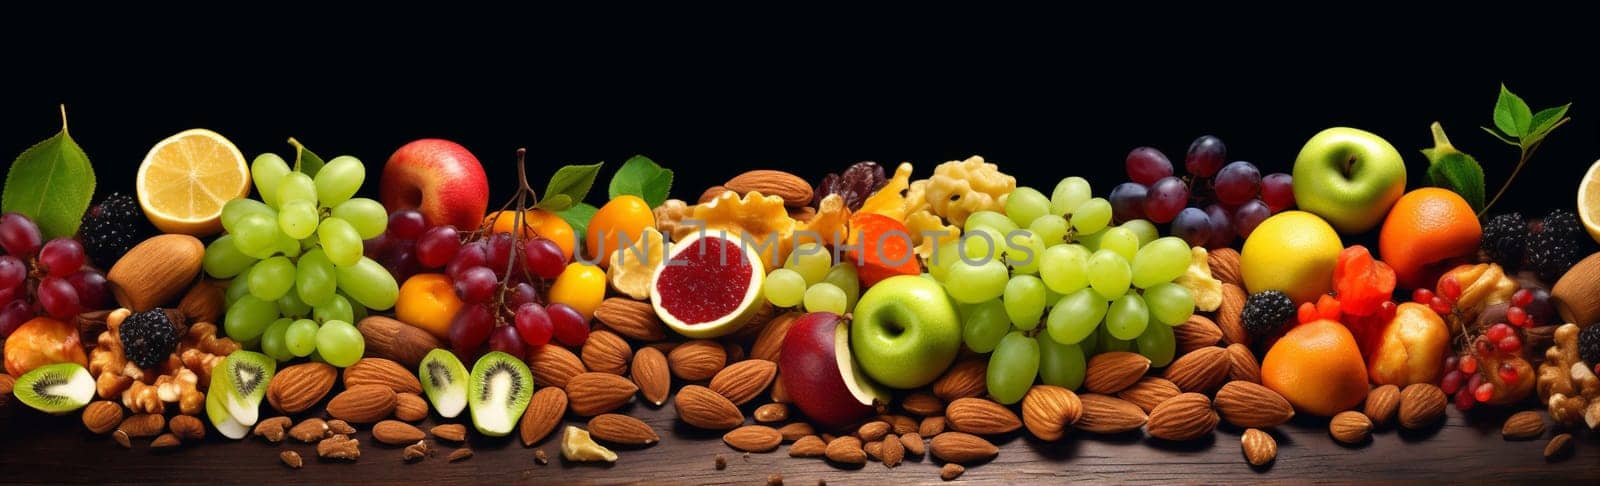 Assorted hazelnut almonds ingredient nut dried cashew snack mixed walnut vegan healthy by Vichizh